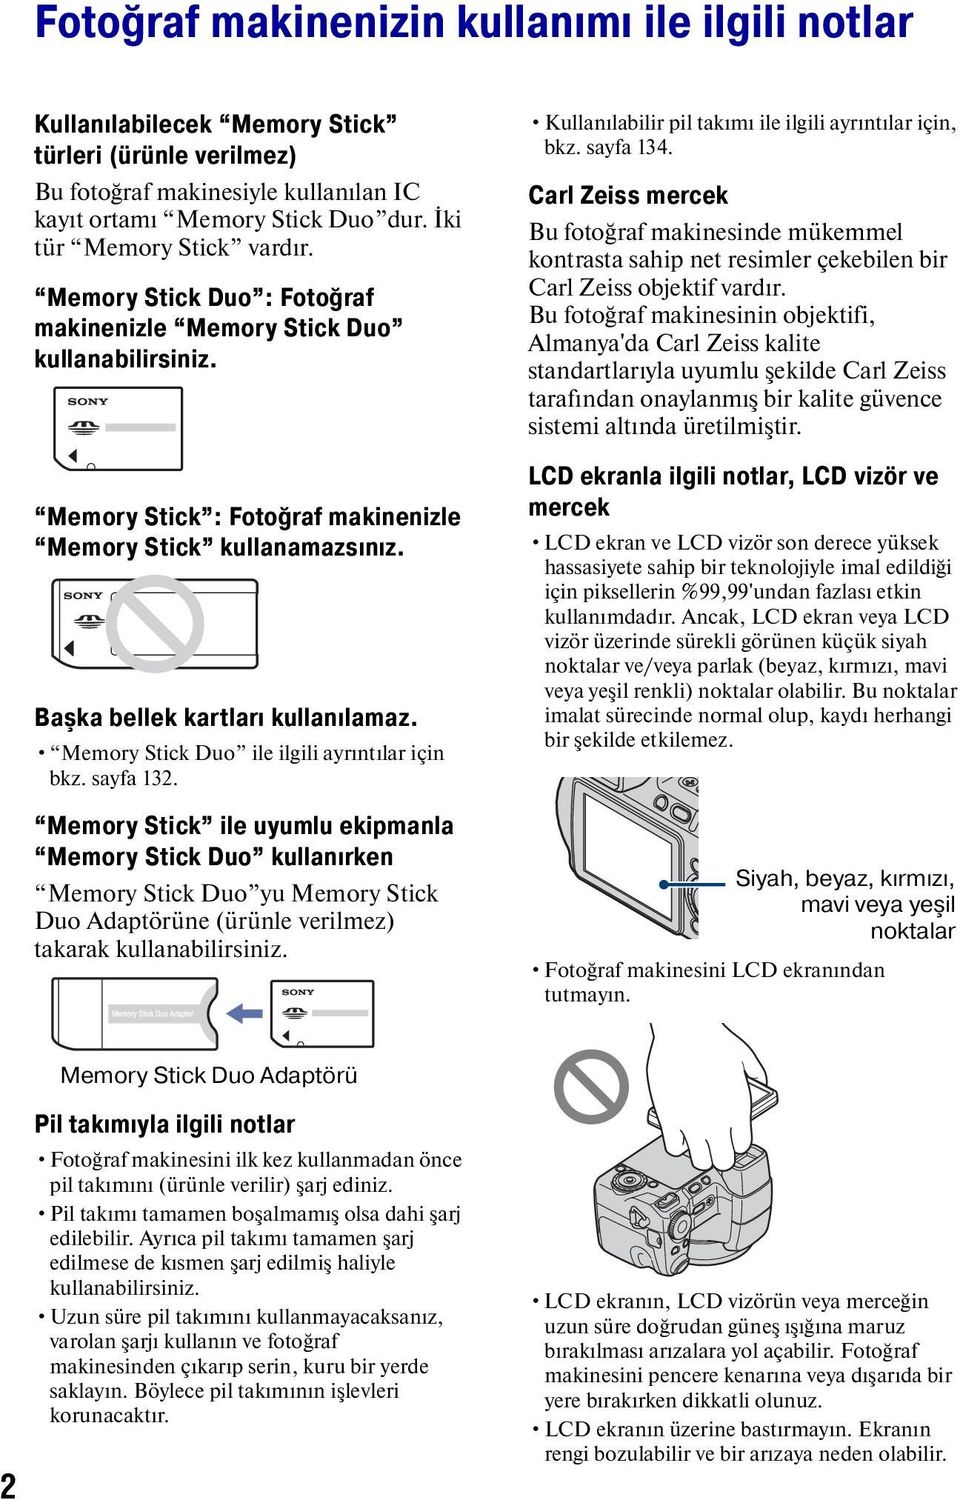 Başka bellek kartları kullanılamaz. Memory Stick Duo ile ilgili ayrıntılar için bkz. sayfa 132.